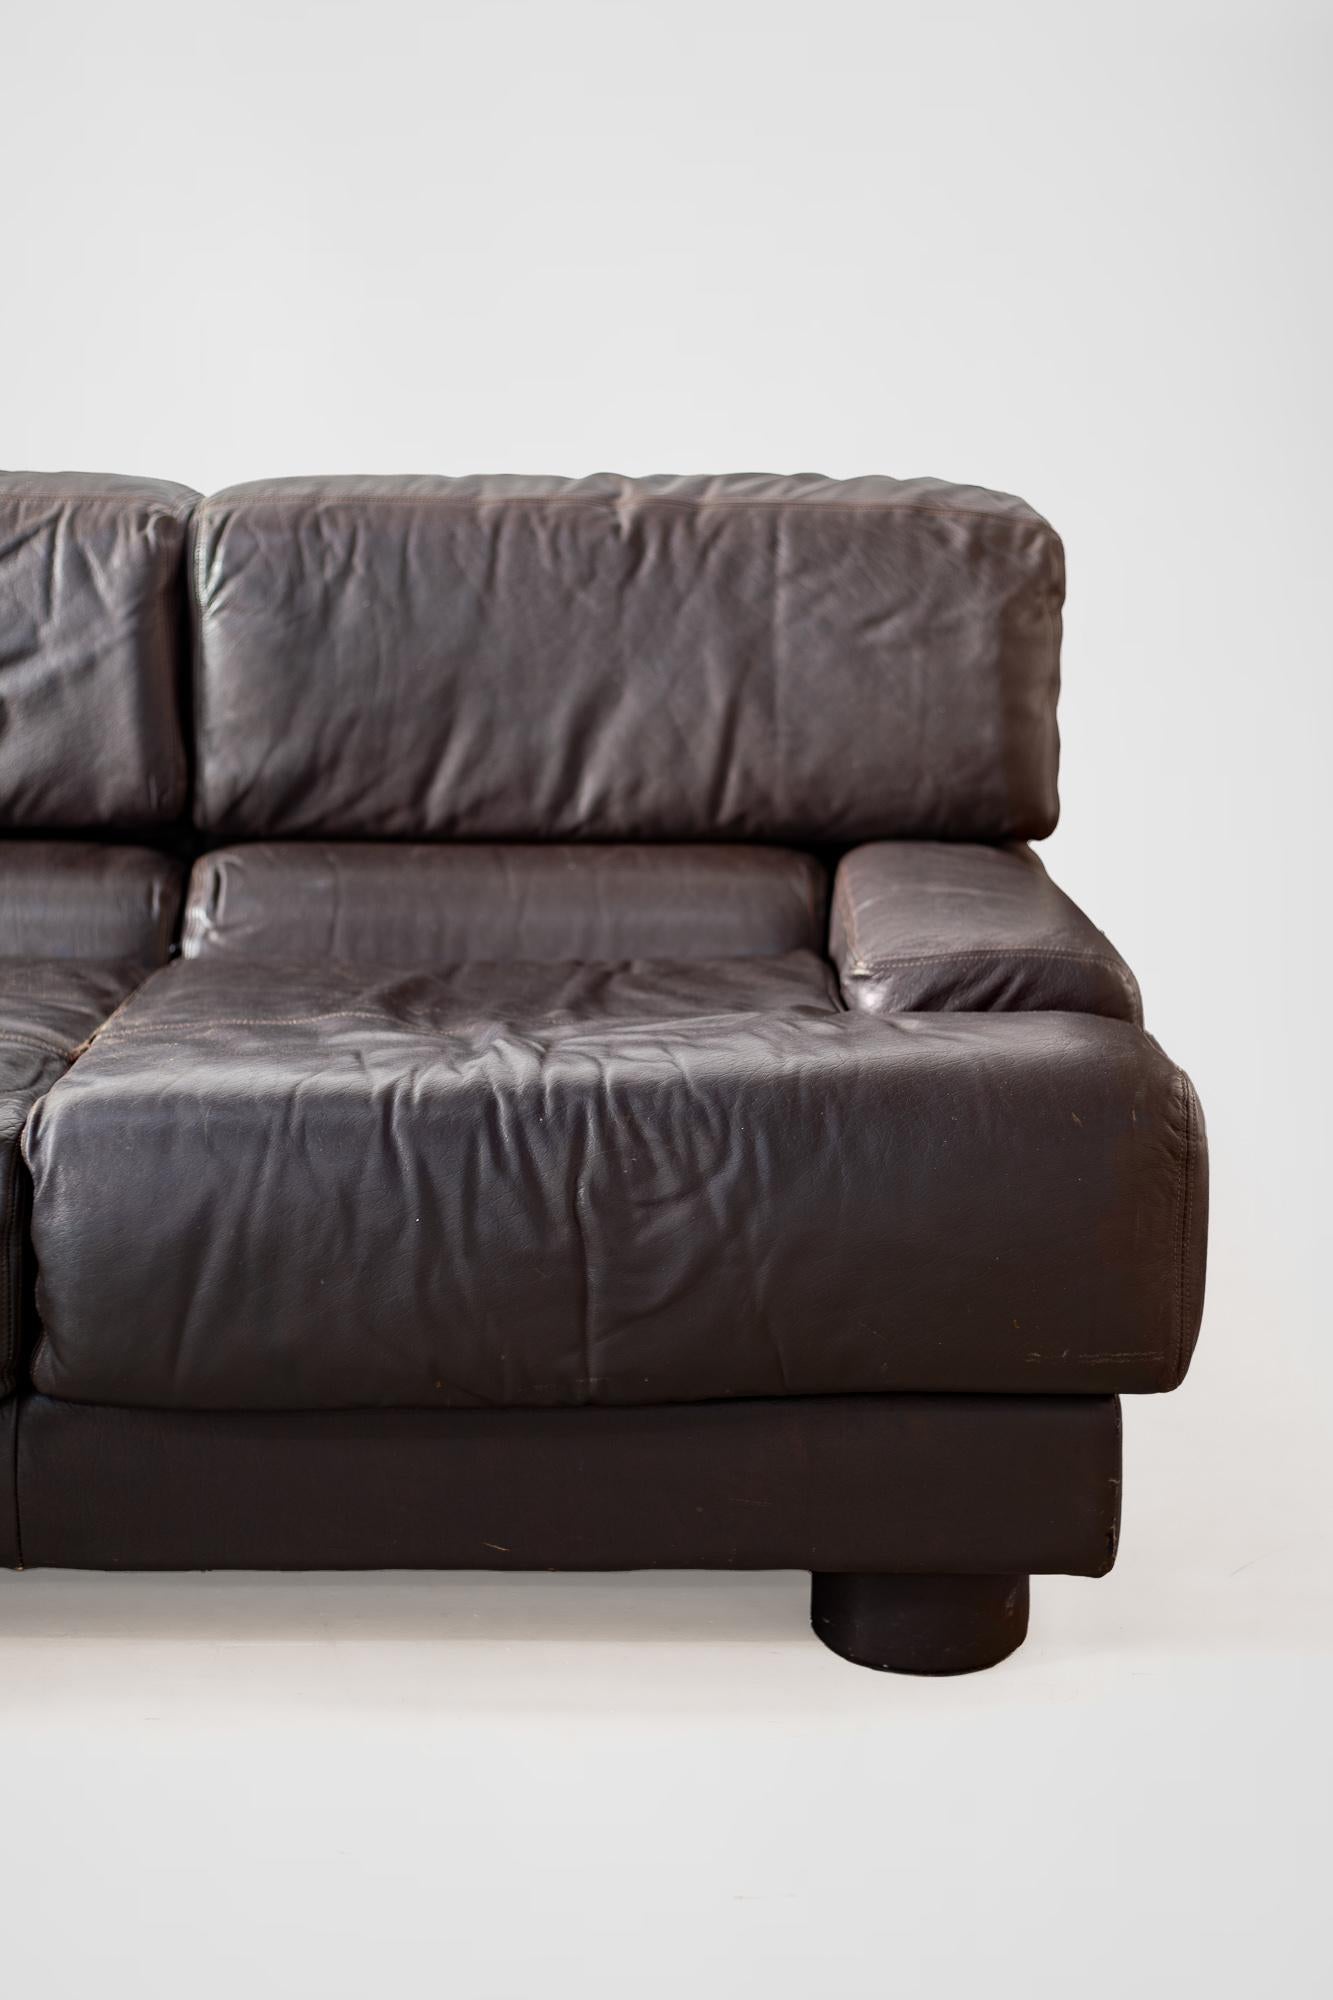 Rare Percival Lafer Sofa in Dark Brown Leather For Sale 8